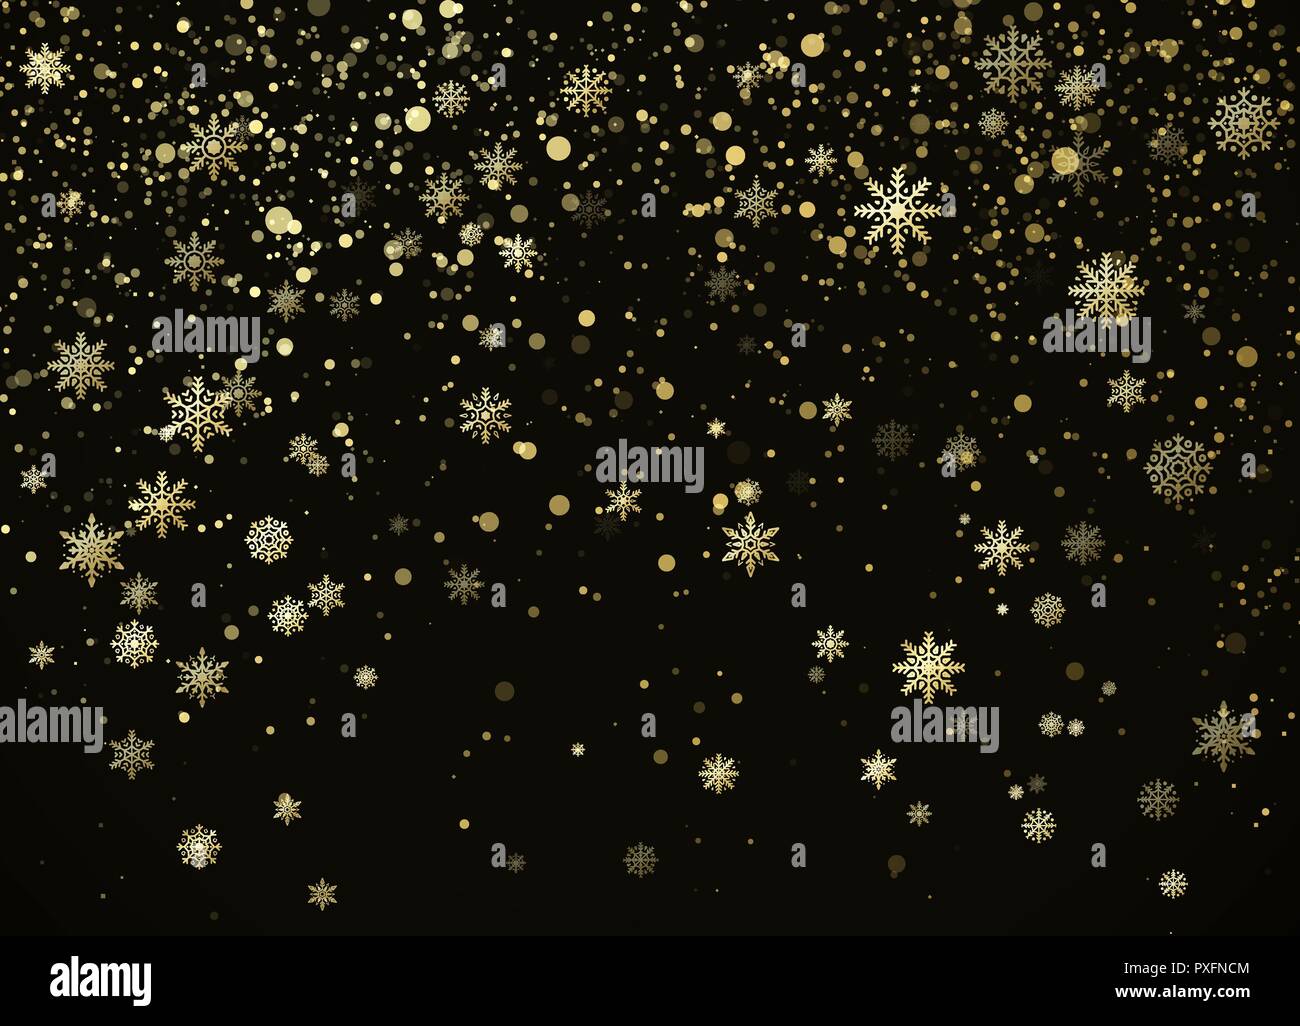 La caduta di fiocchi di neve dorata isolato su sfondo darck. Anno nuovo nad Natale motivo decorativo. Illustrazione Vettoriale Illustrazione Vettoriale